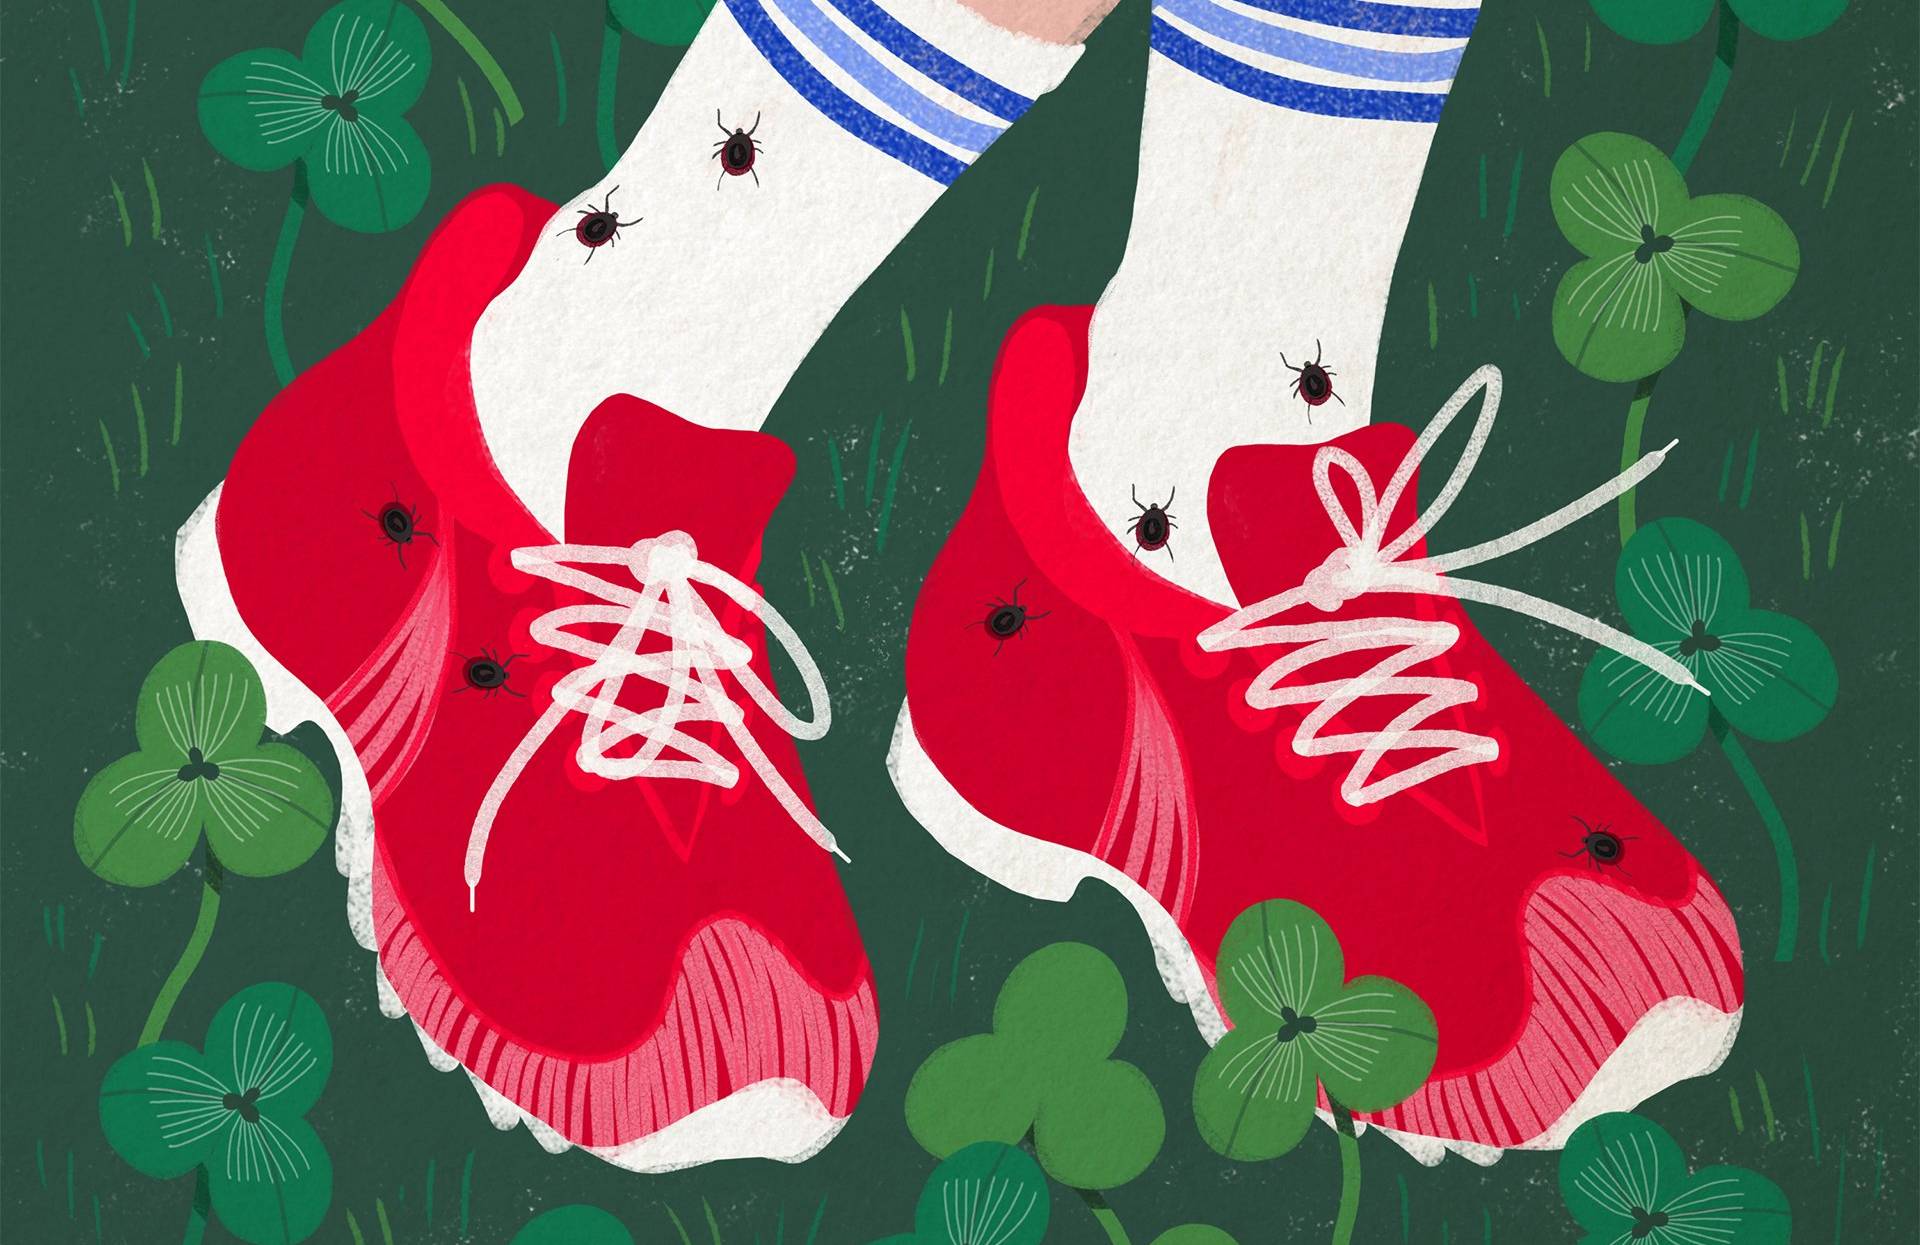 Na rysunku praa nóg w czerwonych butach i białych skarpetkach upstrzonych przez kleszcze